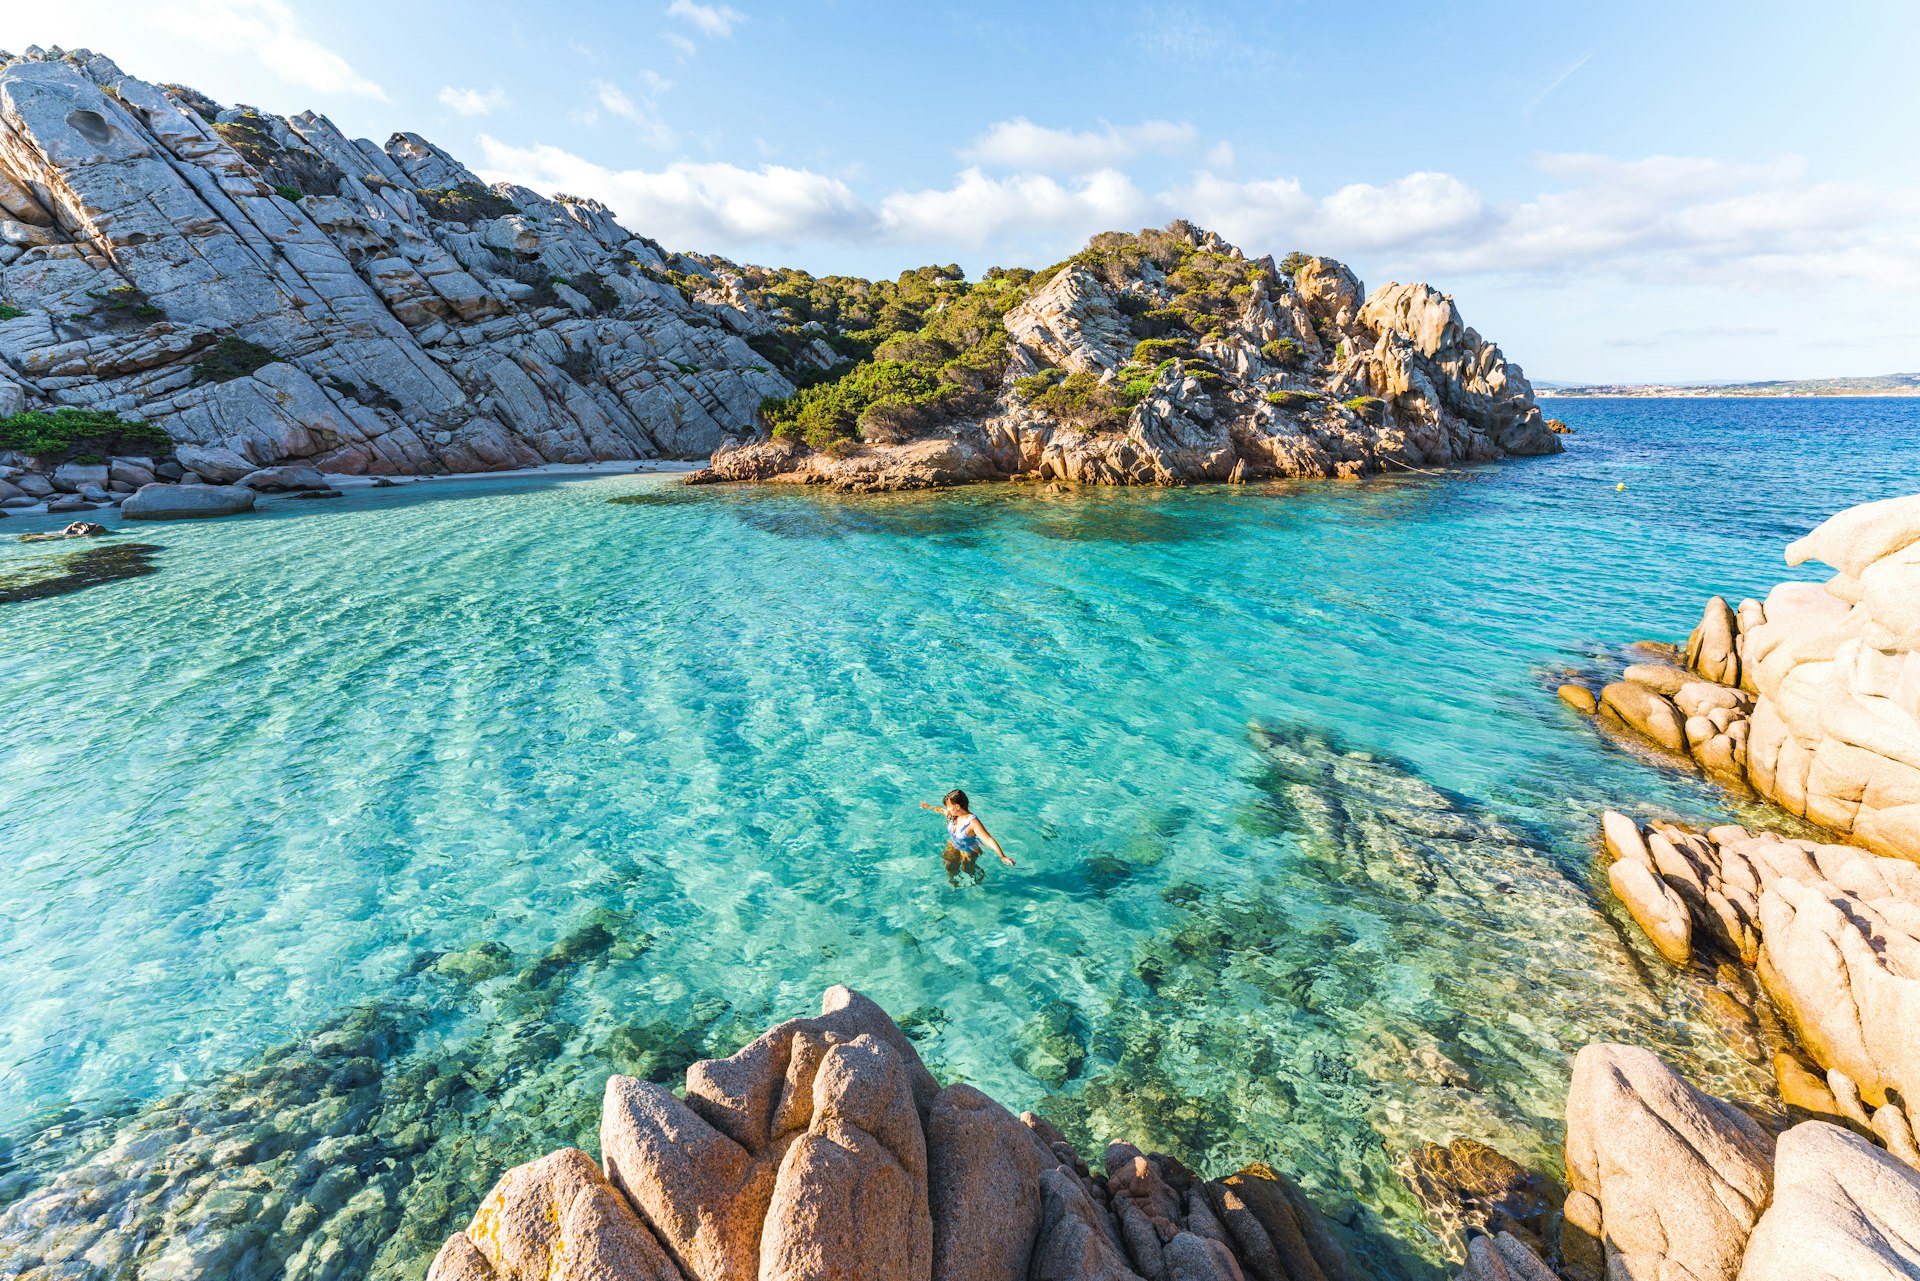 Swimming at the beach of Cala Napoletana, beautiful bay in Caprera, La Maddalena Archipelago National Park, Sardinia.